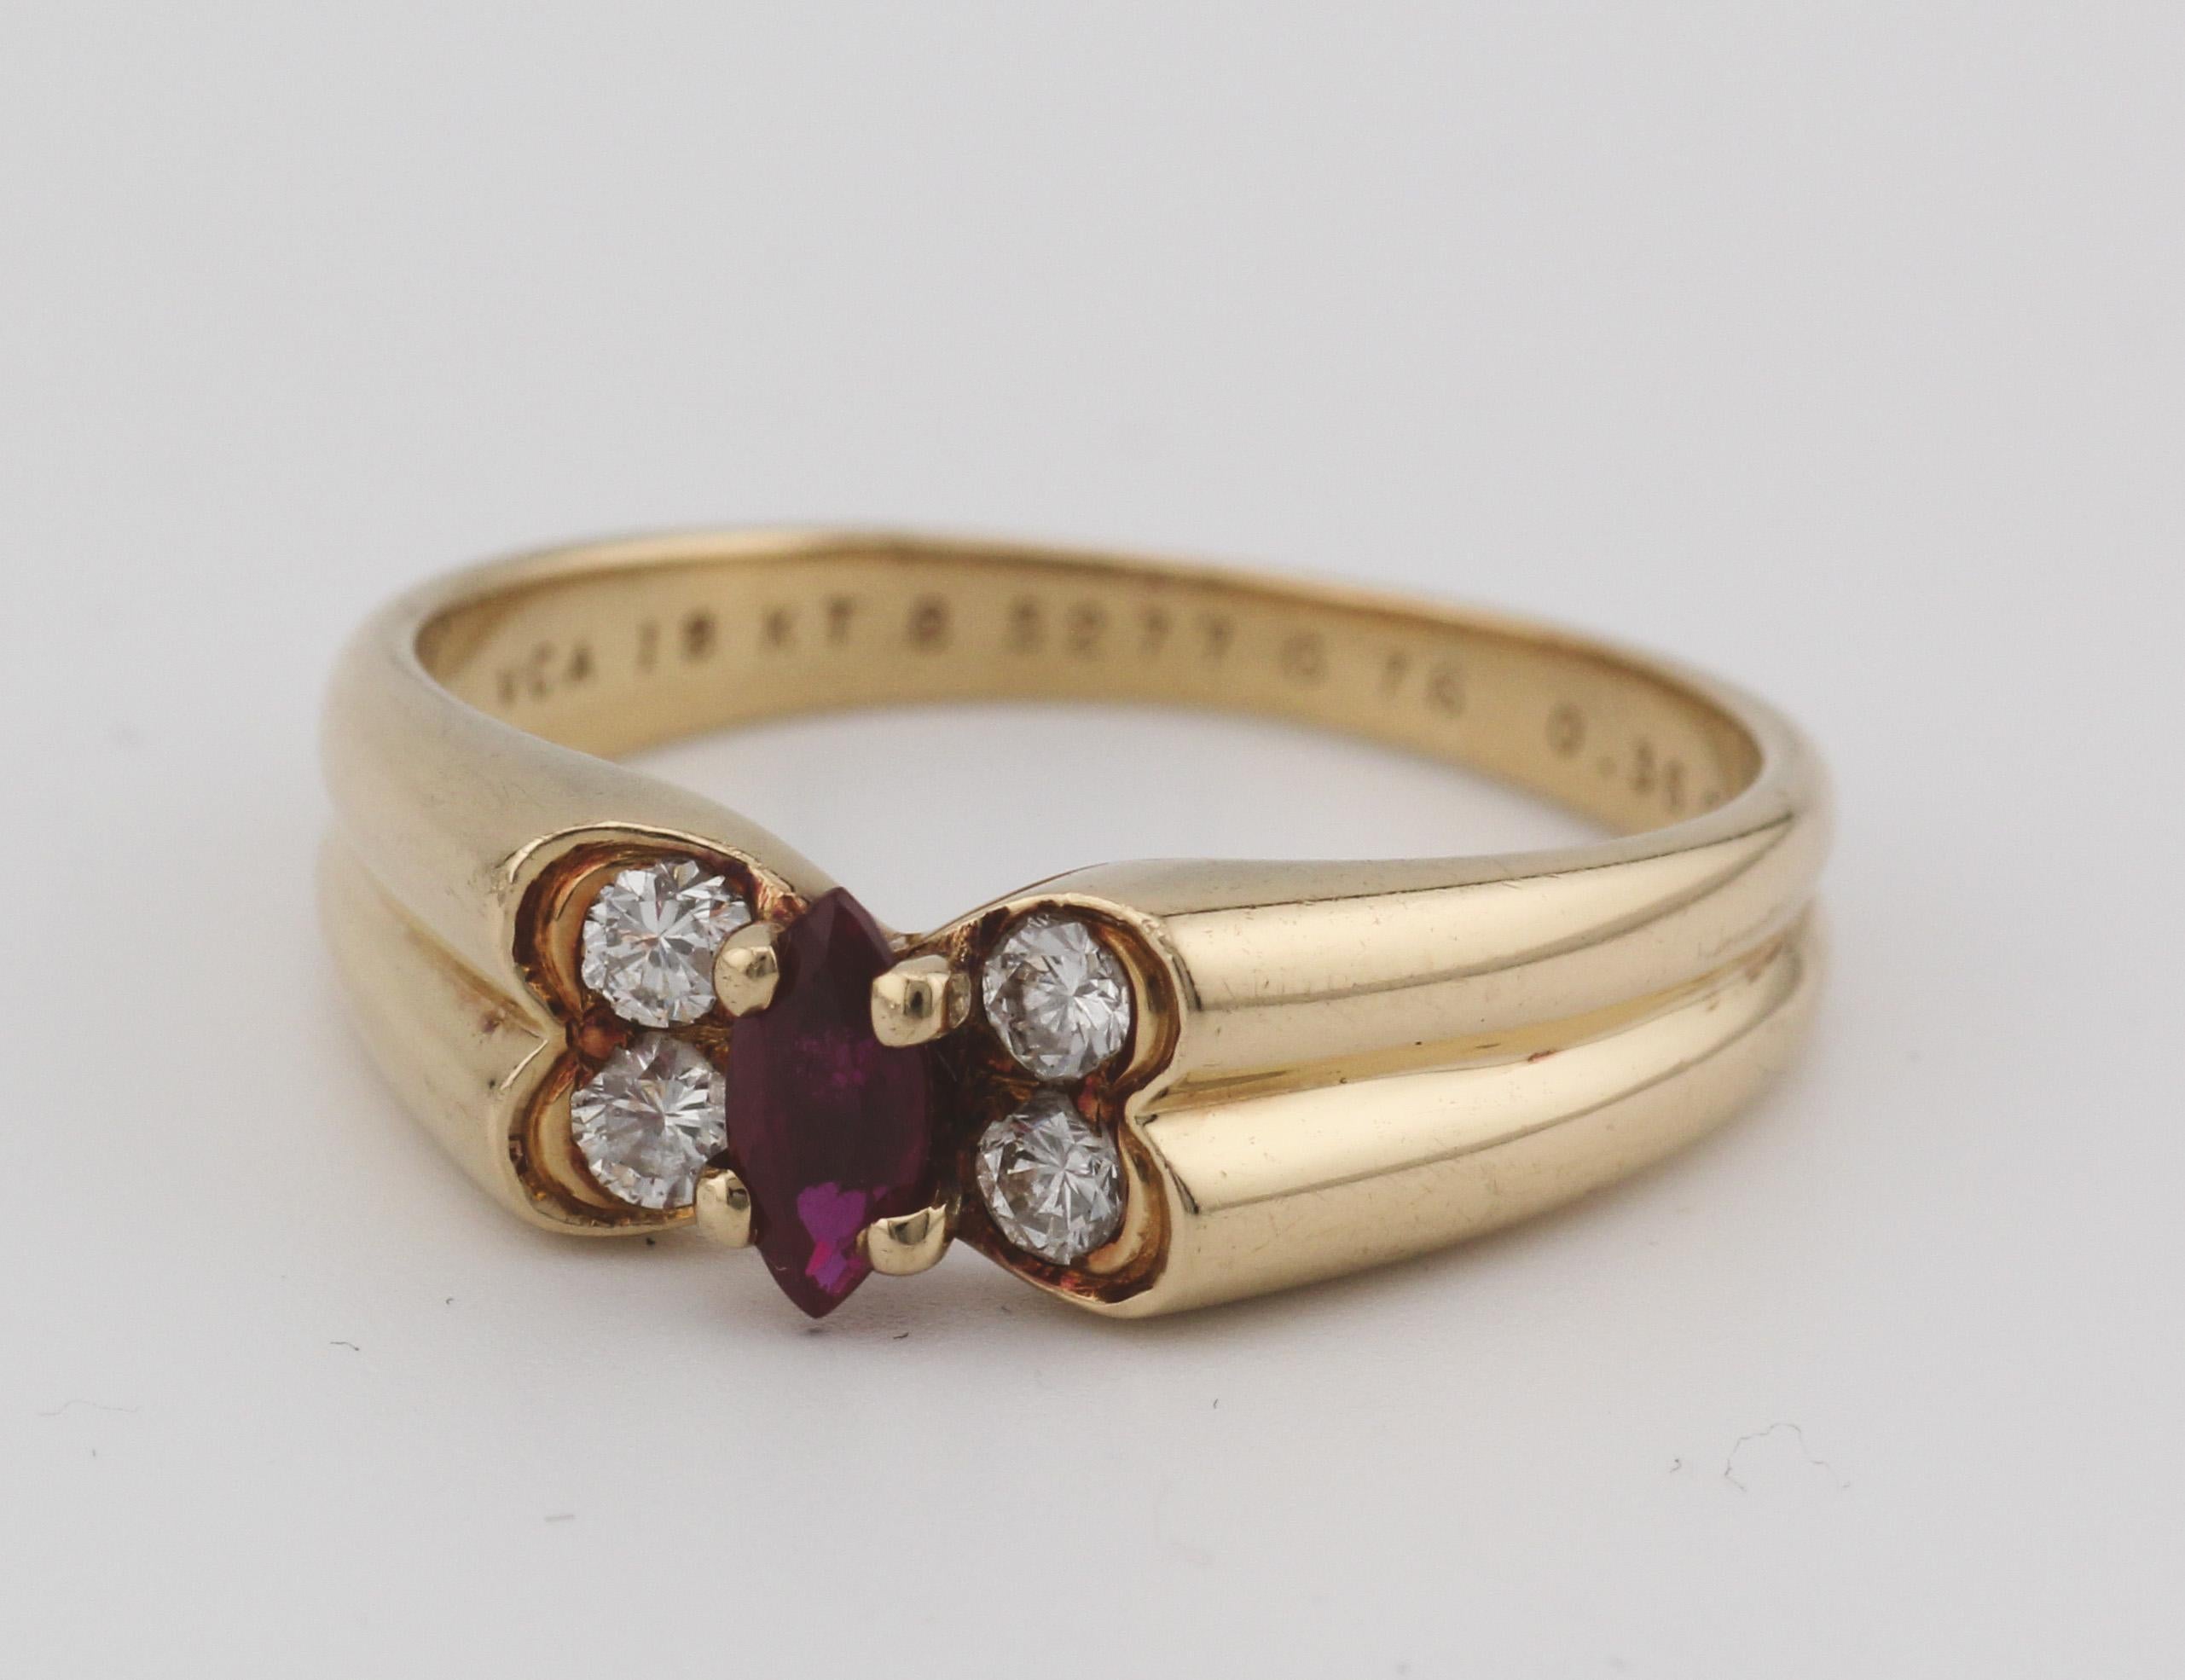 Der Van Cleef & Arpels French Ruby Diamond 18K Yellow Gold Butterfly Ring ist eine bezaubernde Symphonie aus Farbe, Glanz und Handwerkskunst, die die Essenz zeitloser Schönheit verkörpert. Dieser von der angesehenen französischen Manufaktur Van